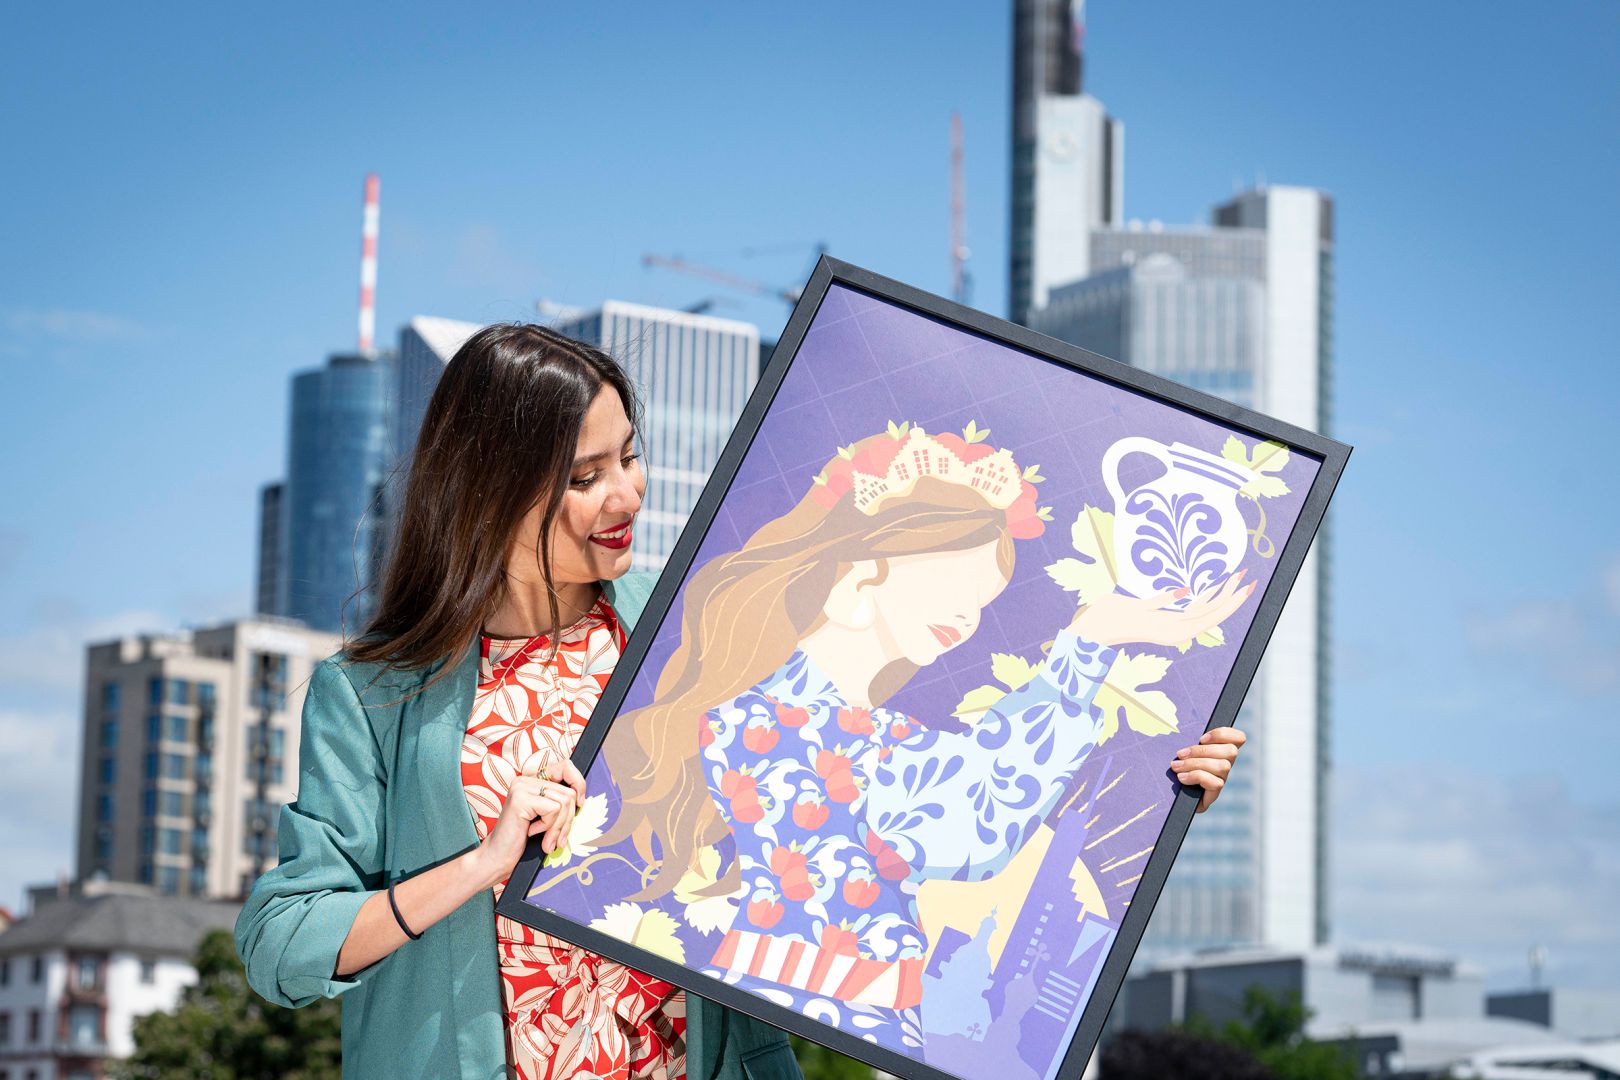 Ana Paola Paniagua hält ihr Bild in der Hand, im Hintergrund ist die Frankfurter Skyline zu sehen.